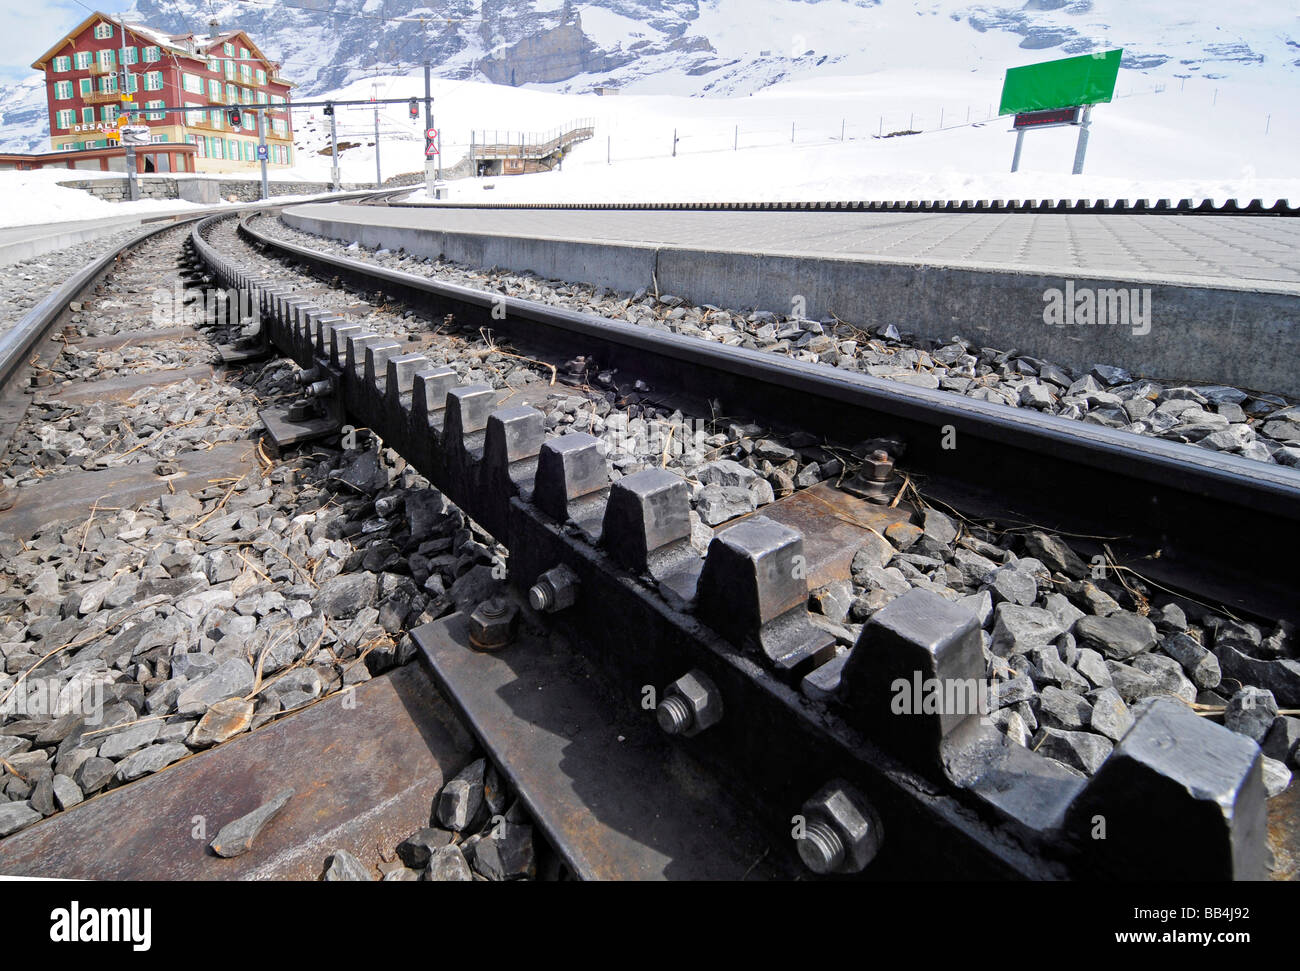 Nahaufnahme einer Zahnradbahn, so dass Bergbahnen in steilen Steigungen ermöglichen. Foto in der Nähe von Grindelwald, Schweiz. Stockfoto